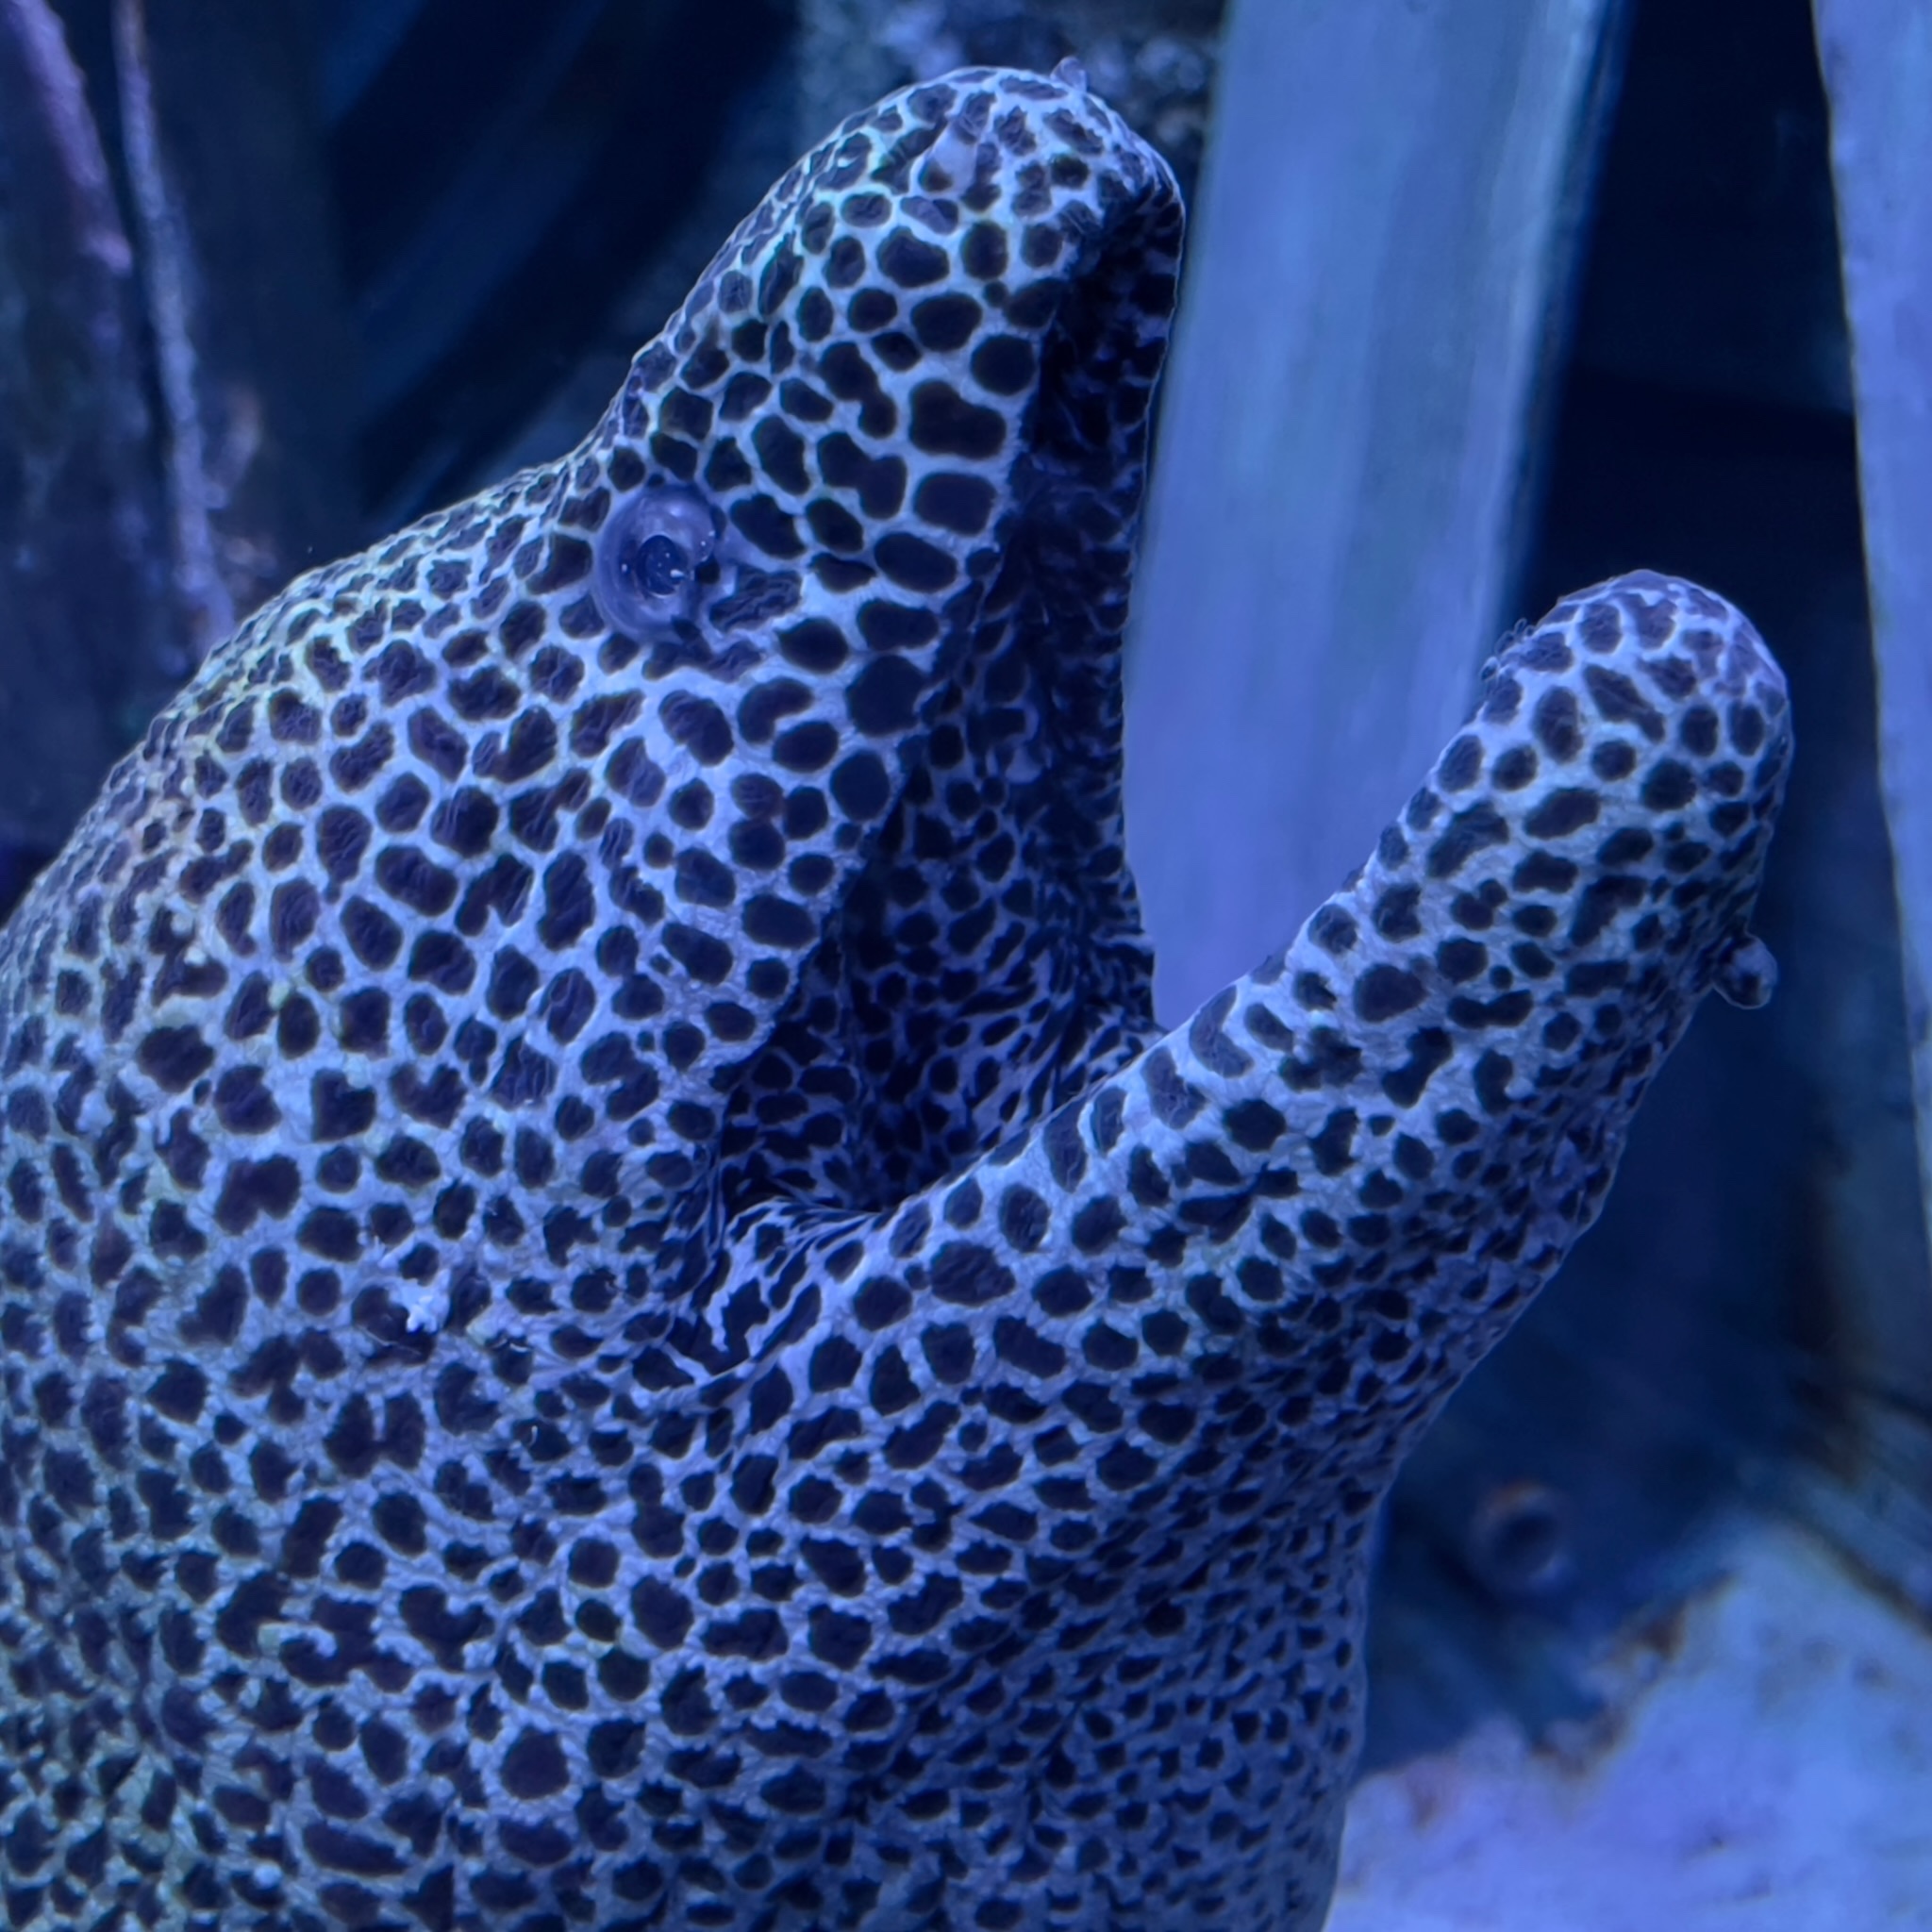 Oman Aquarium eel